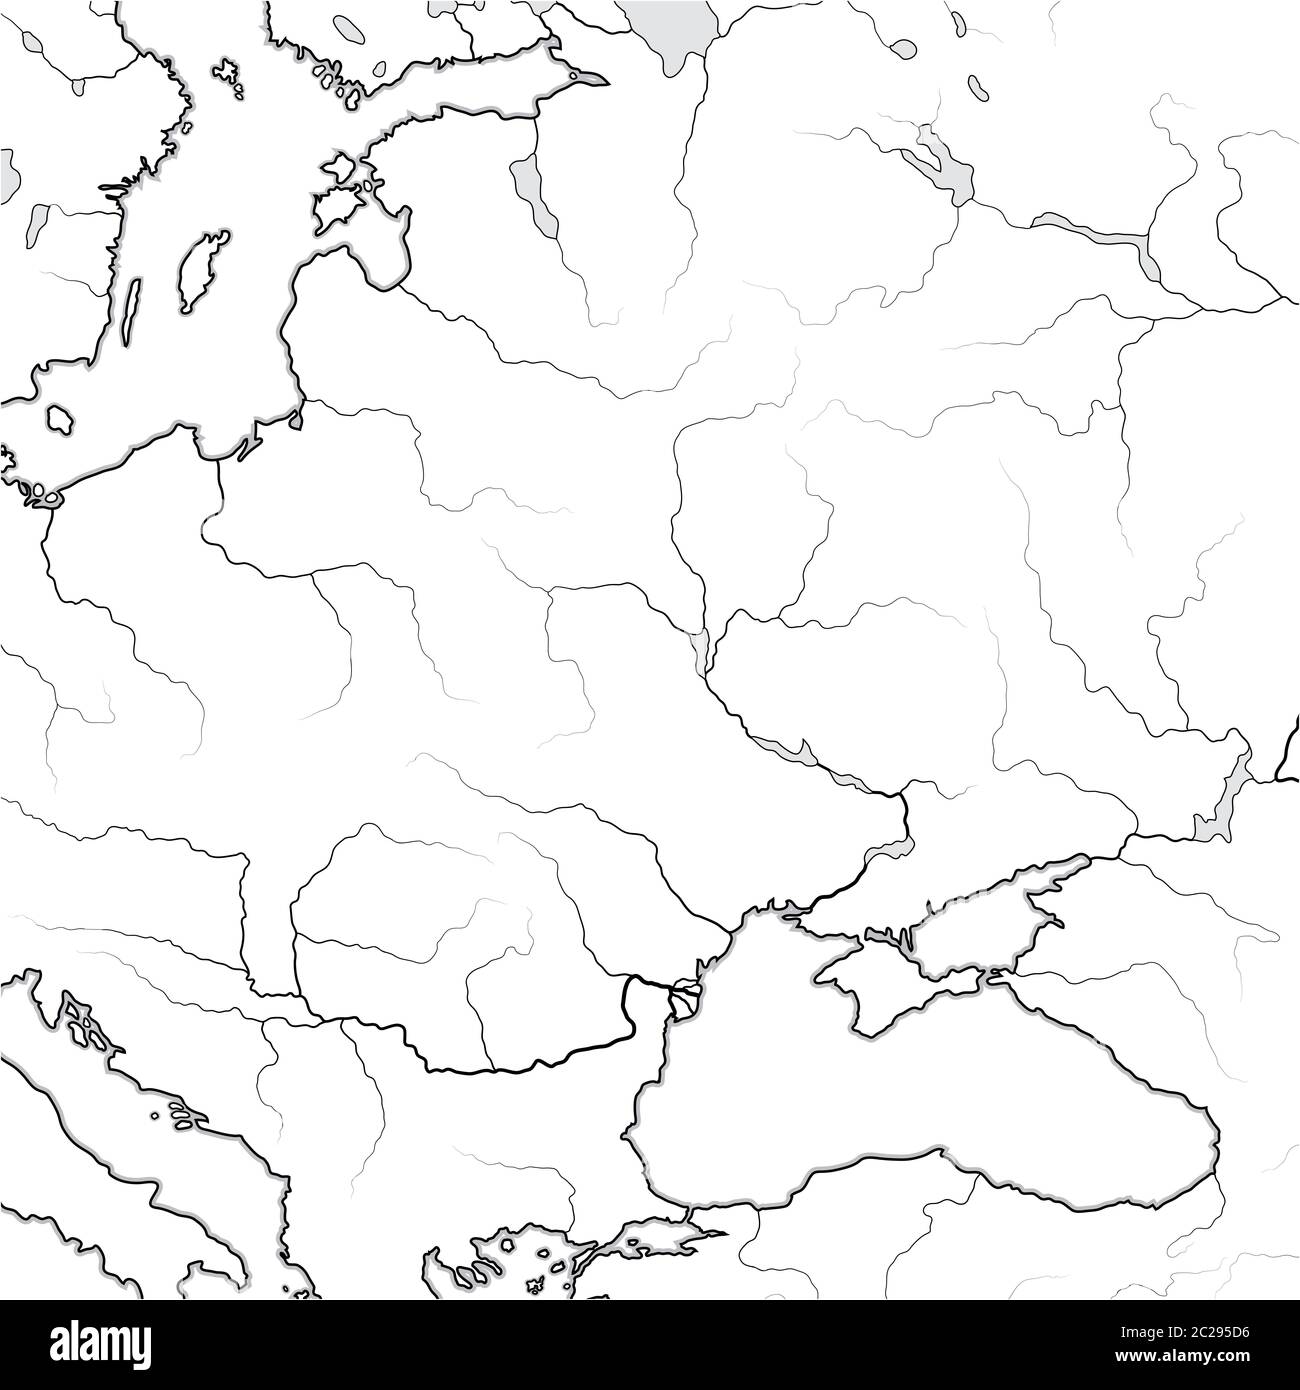 Mappa delle terre SLAVICHE e BALTICHE: Ukraïne, Lituania, Polonia, Repubblica Ceca, Croazia, Romania, Ungheria. Grafico geografico. Foto Stock